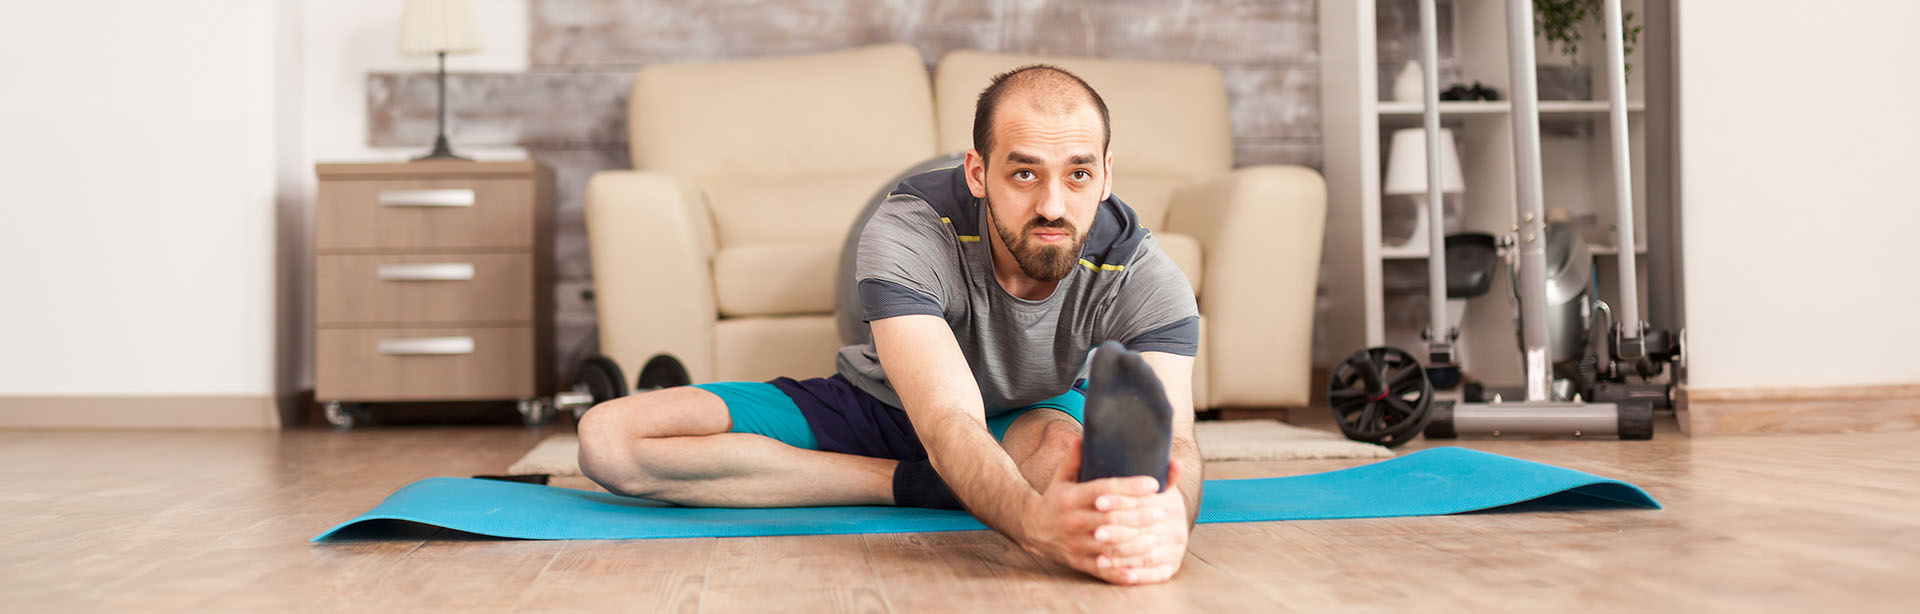 Mann macht Stretching-Übungen im Homeoffice